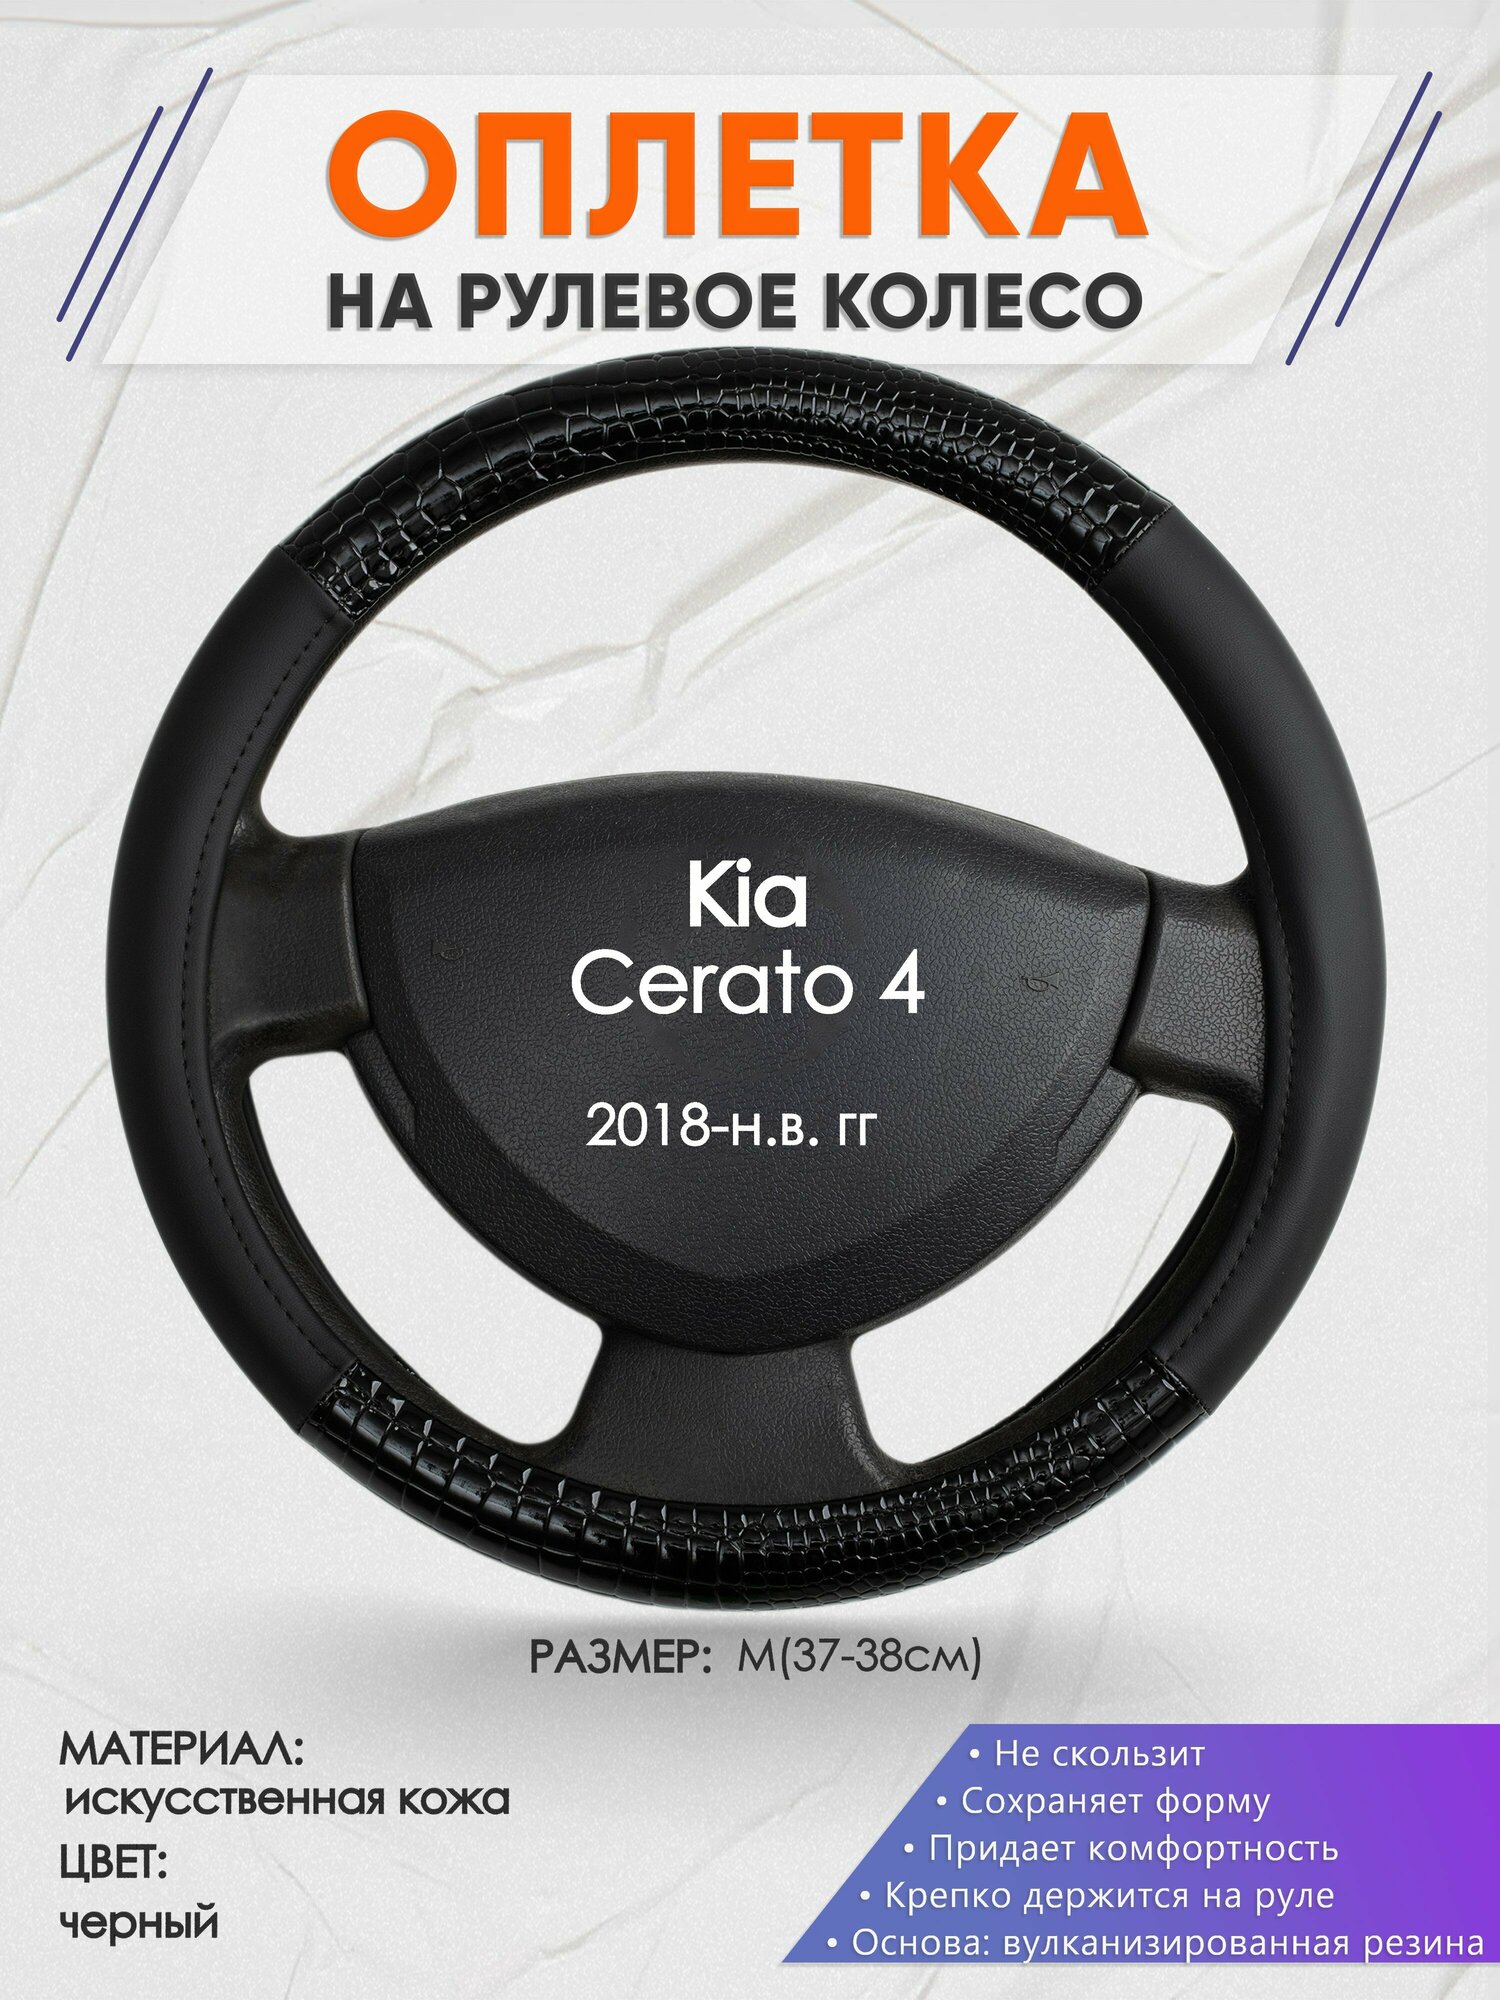 Оплетка на руль для Kia Cerato 4(Киа Церато 4) 2018-н. в, M(37-38см), Искусственная кожа 83